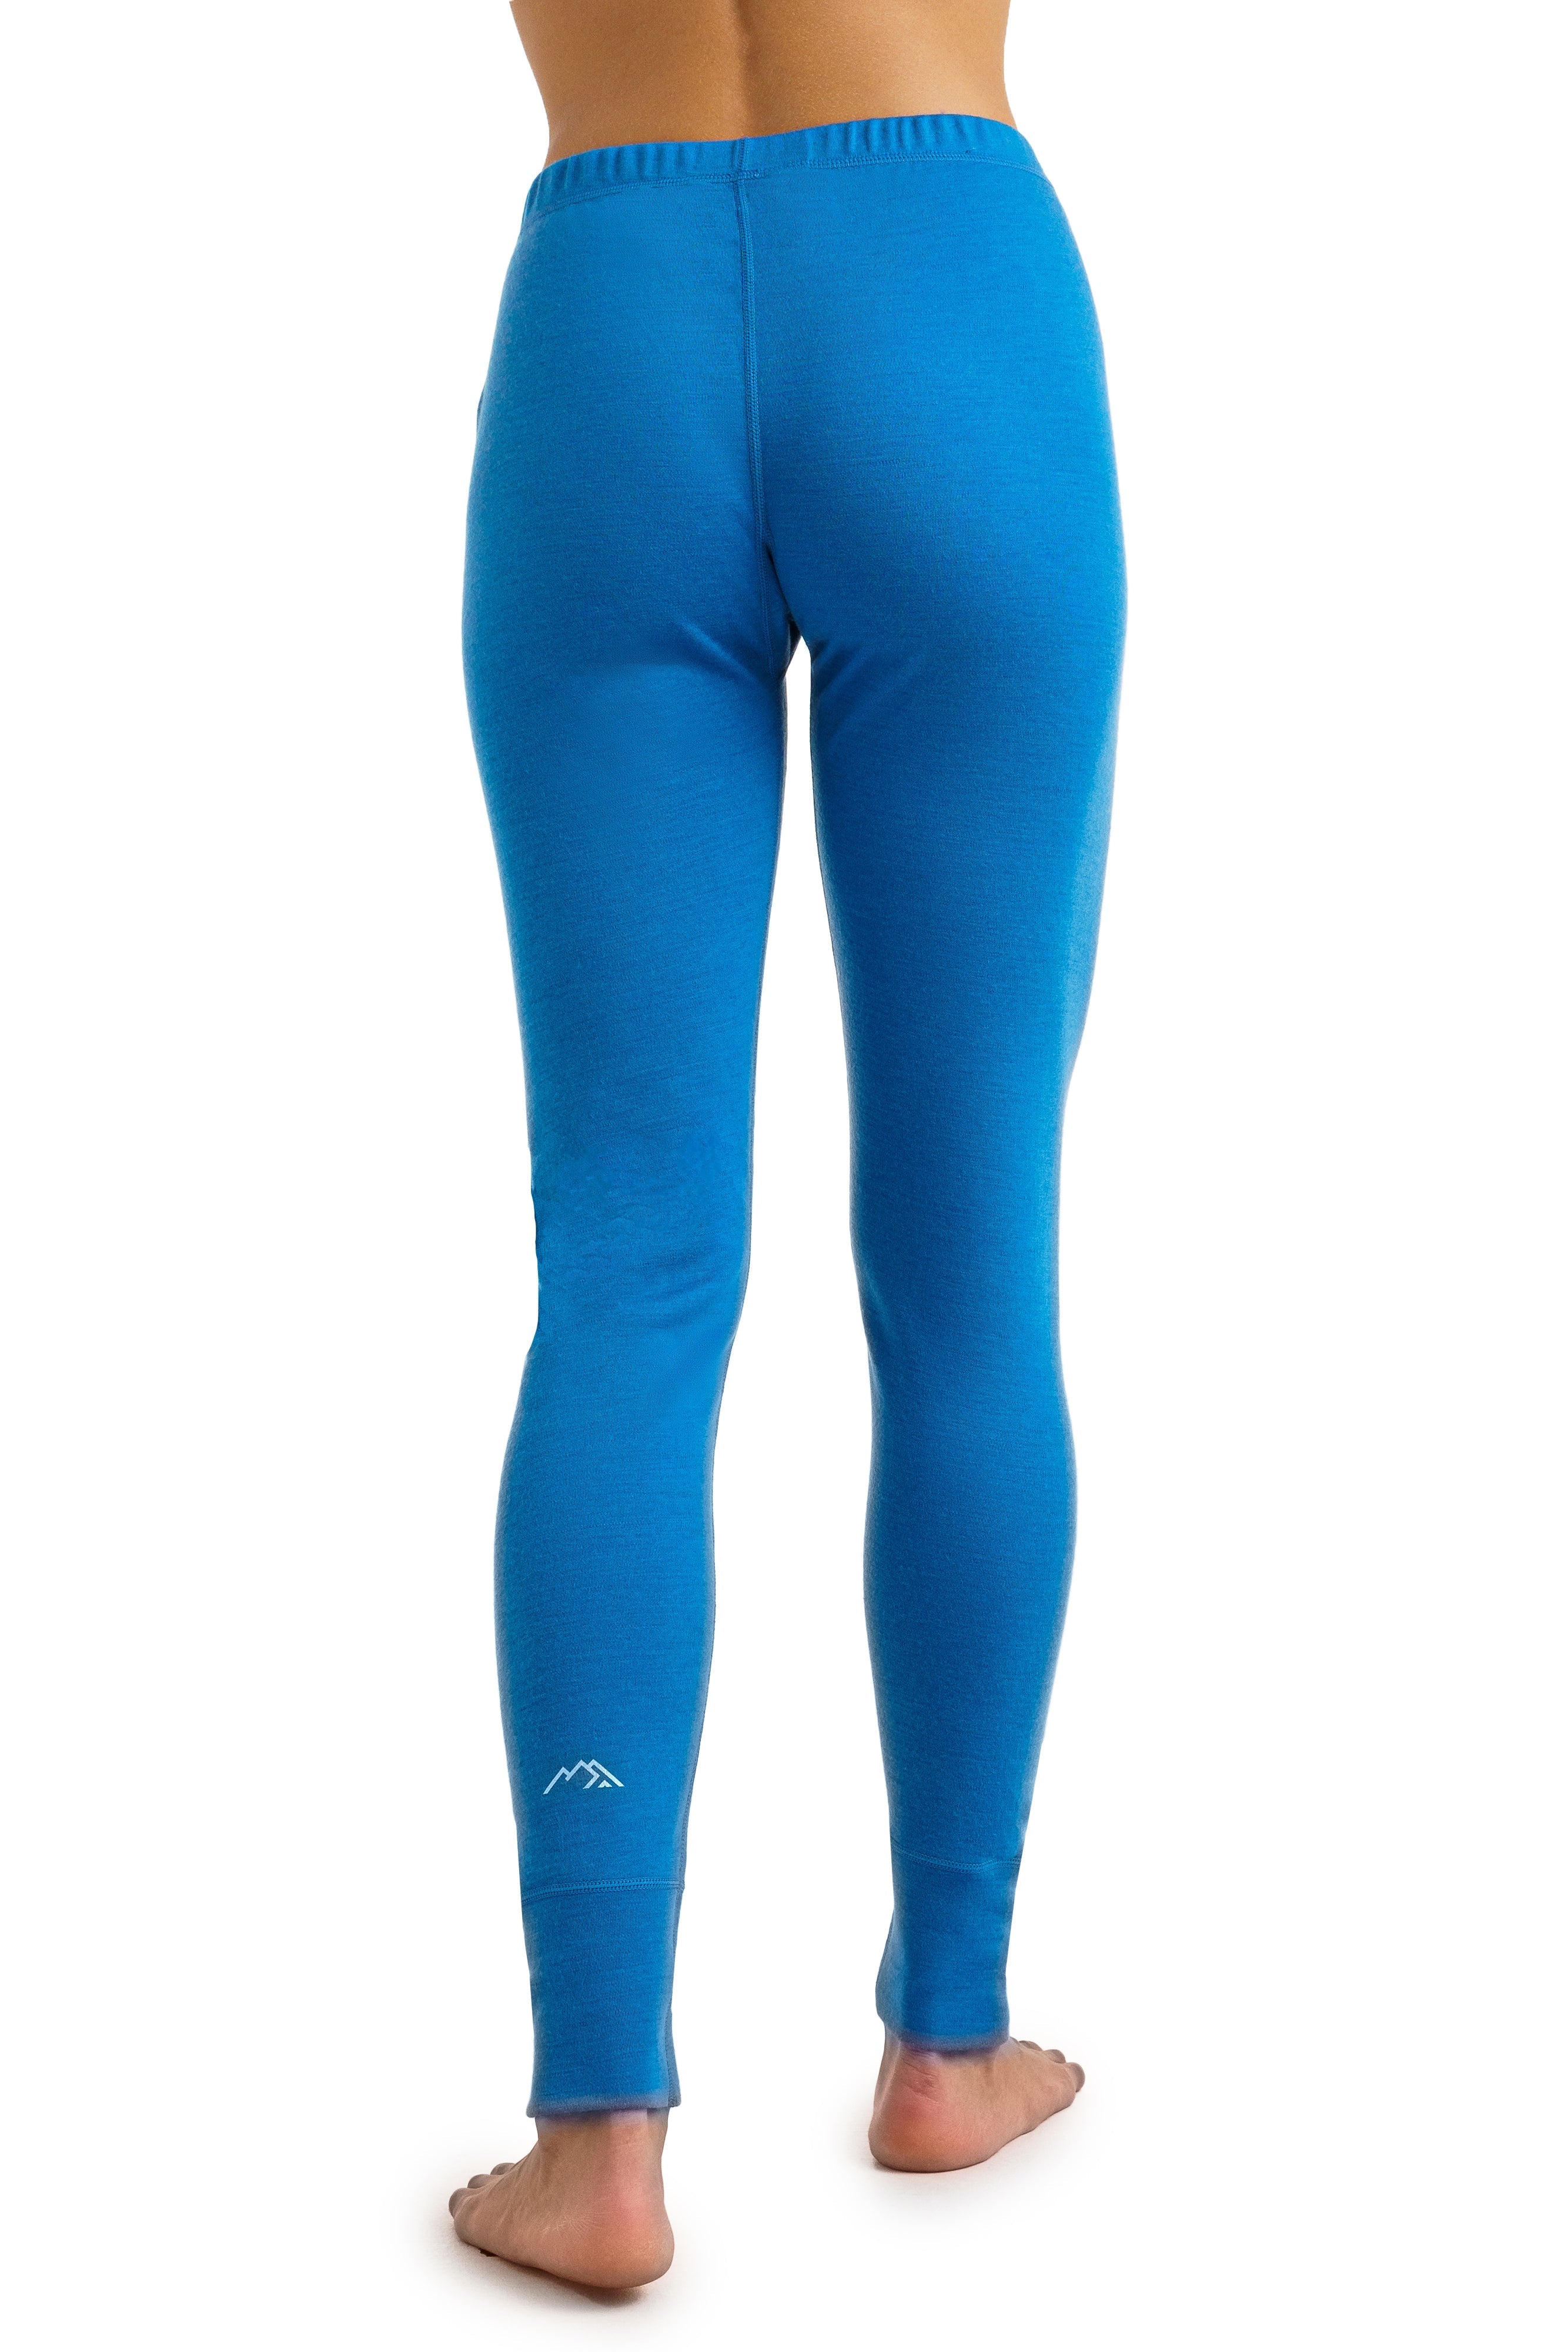 Women's Merino Wool Pants - Heavyweight Leggings Base Layer Ocean Blue, Bottom, Underwear